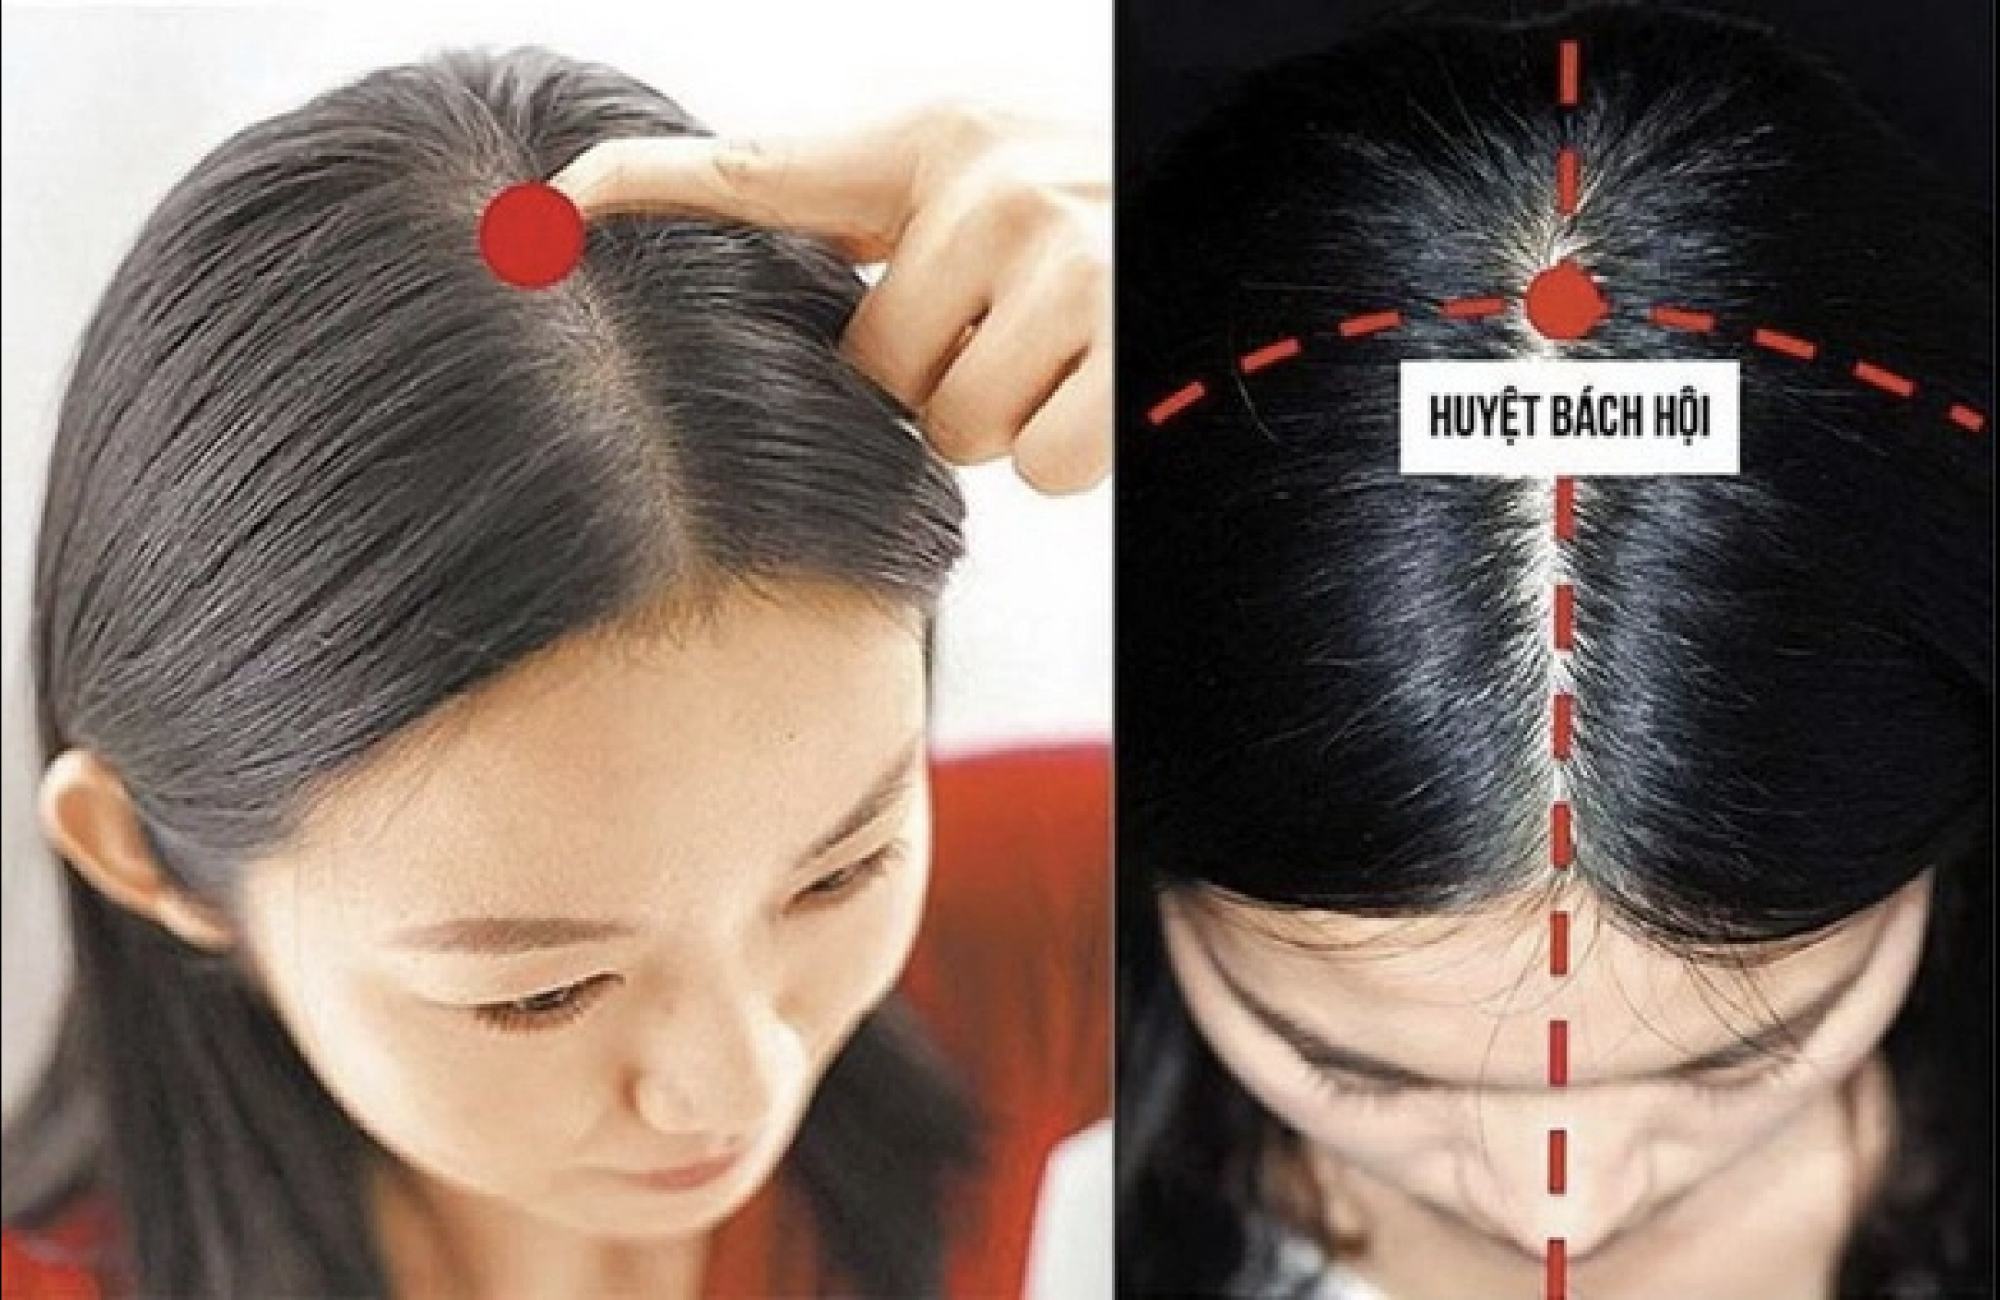 Chuyên gia Đông y chỉ cách bấm huyệt chữa đau đầu, không cần dùng thuốc mà vẫn hiệu quả - Ảnh 1